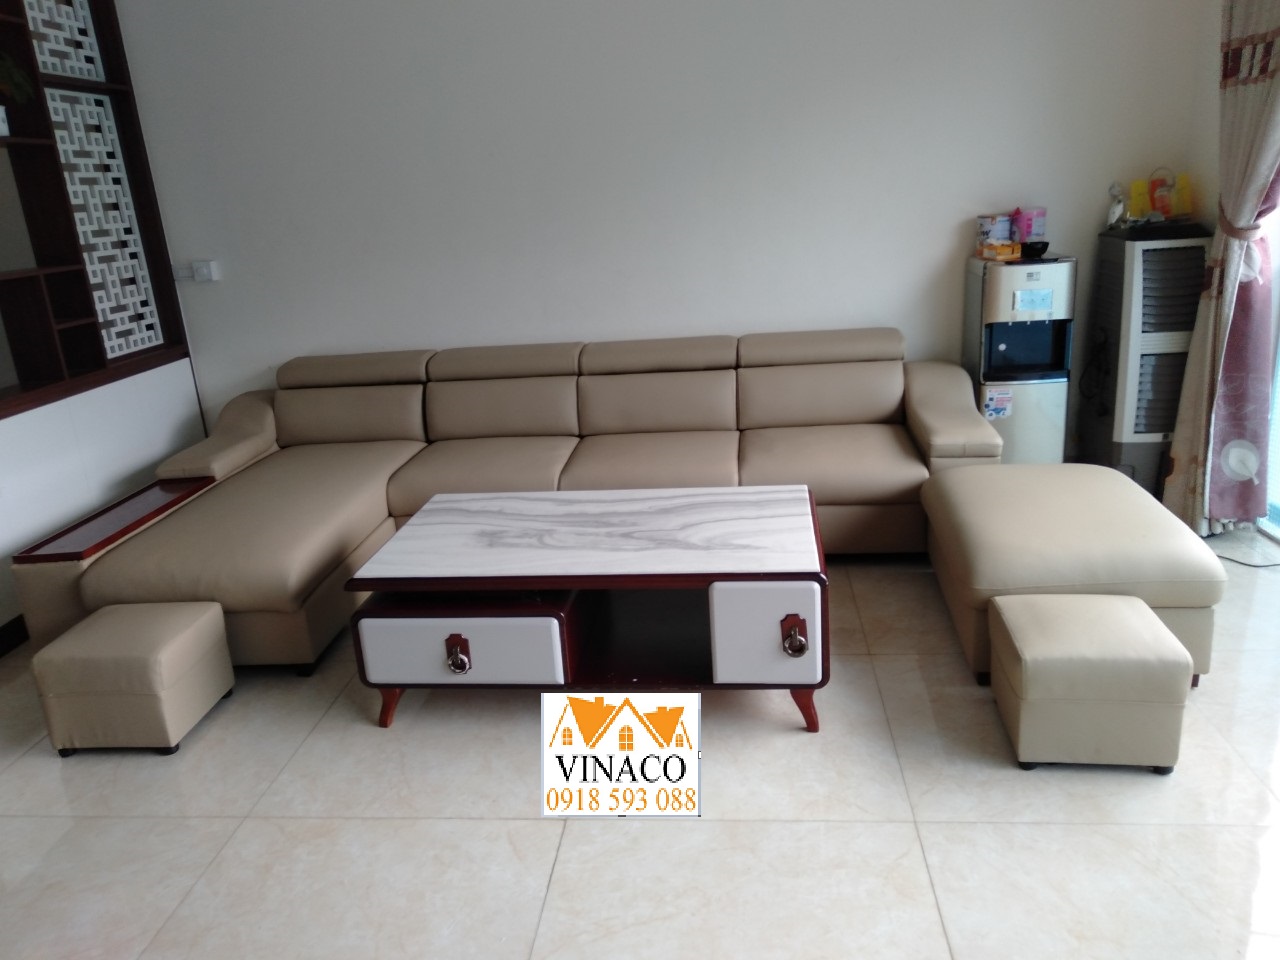 Dịch vụ, chất liệu bọc ghế sofa chất lượng của Vinaco tại Hà Nội